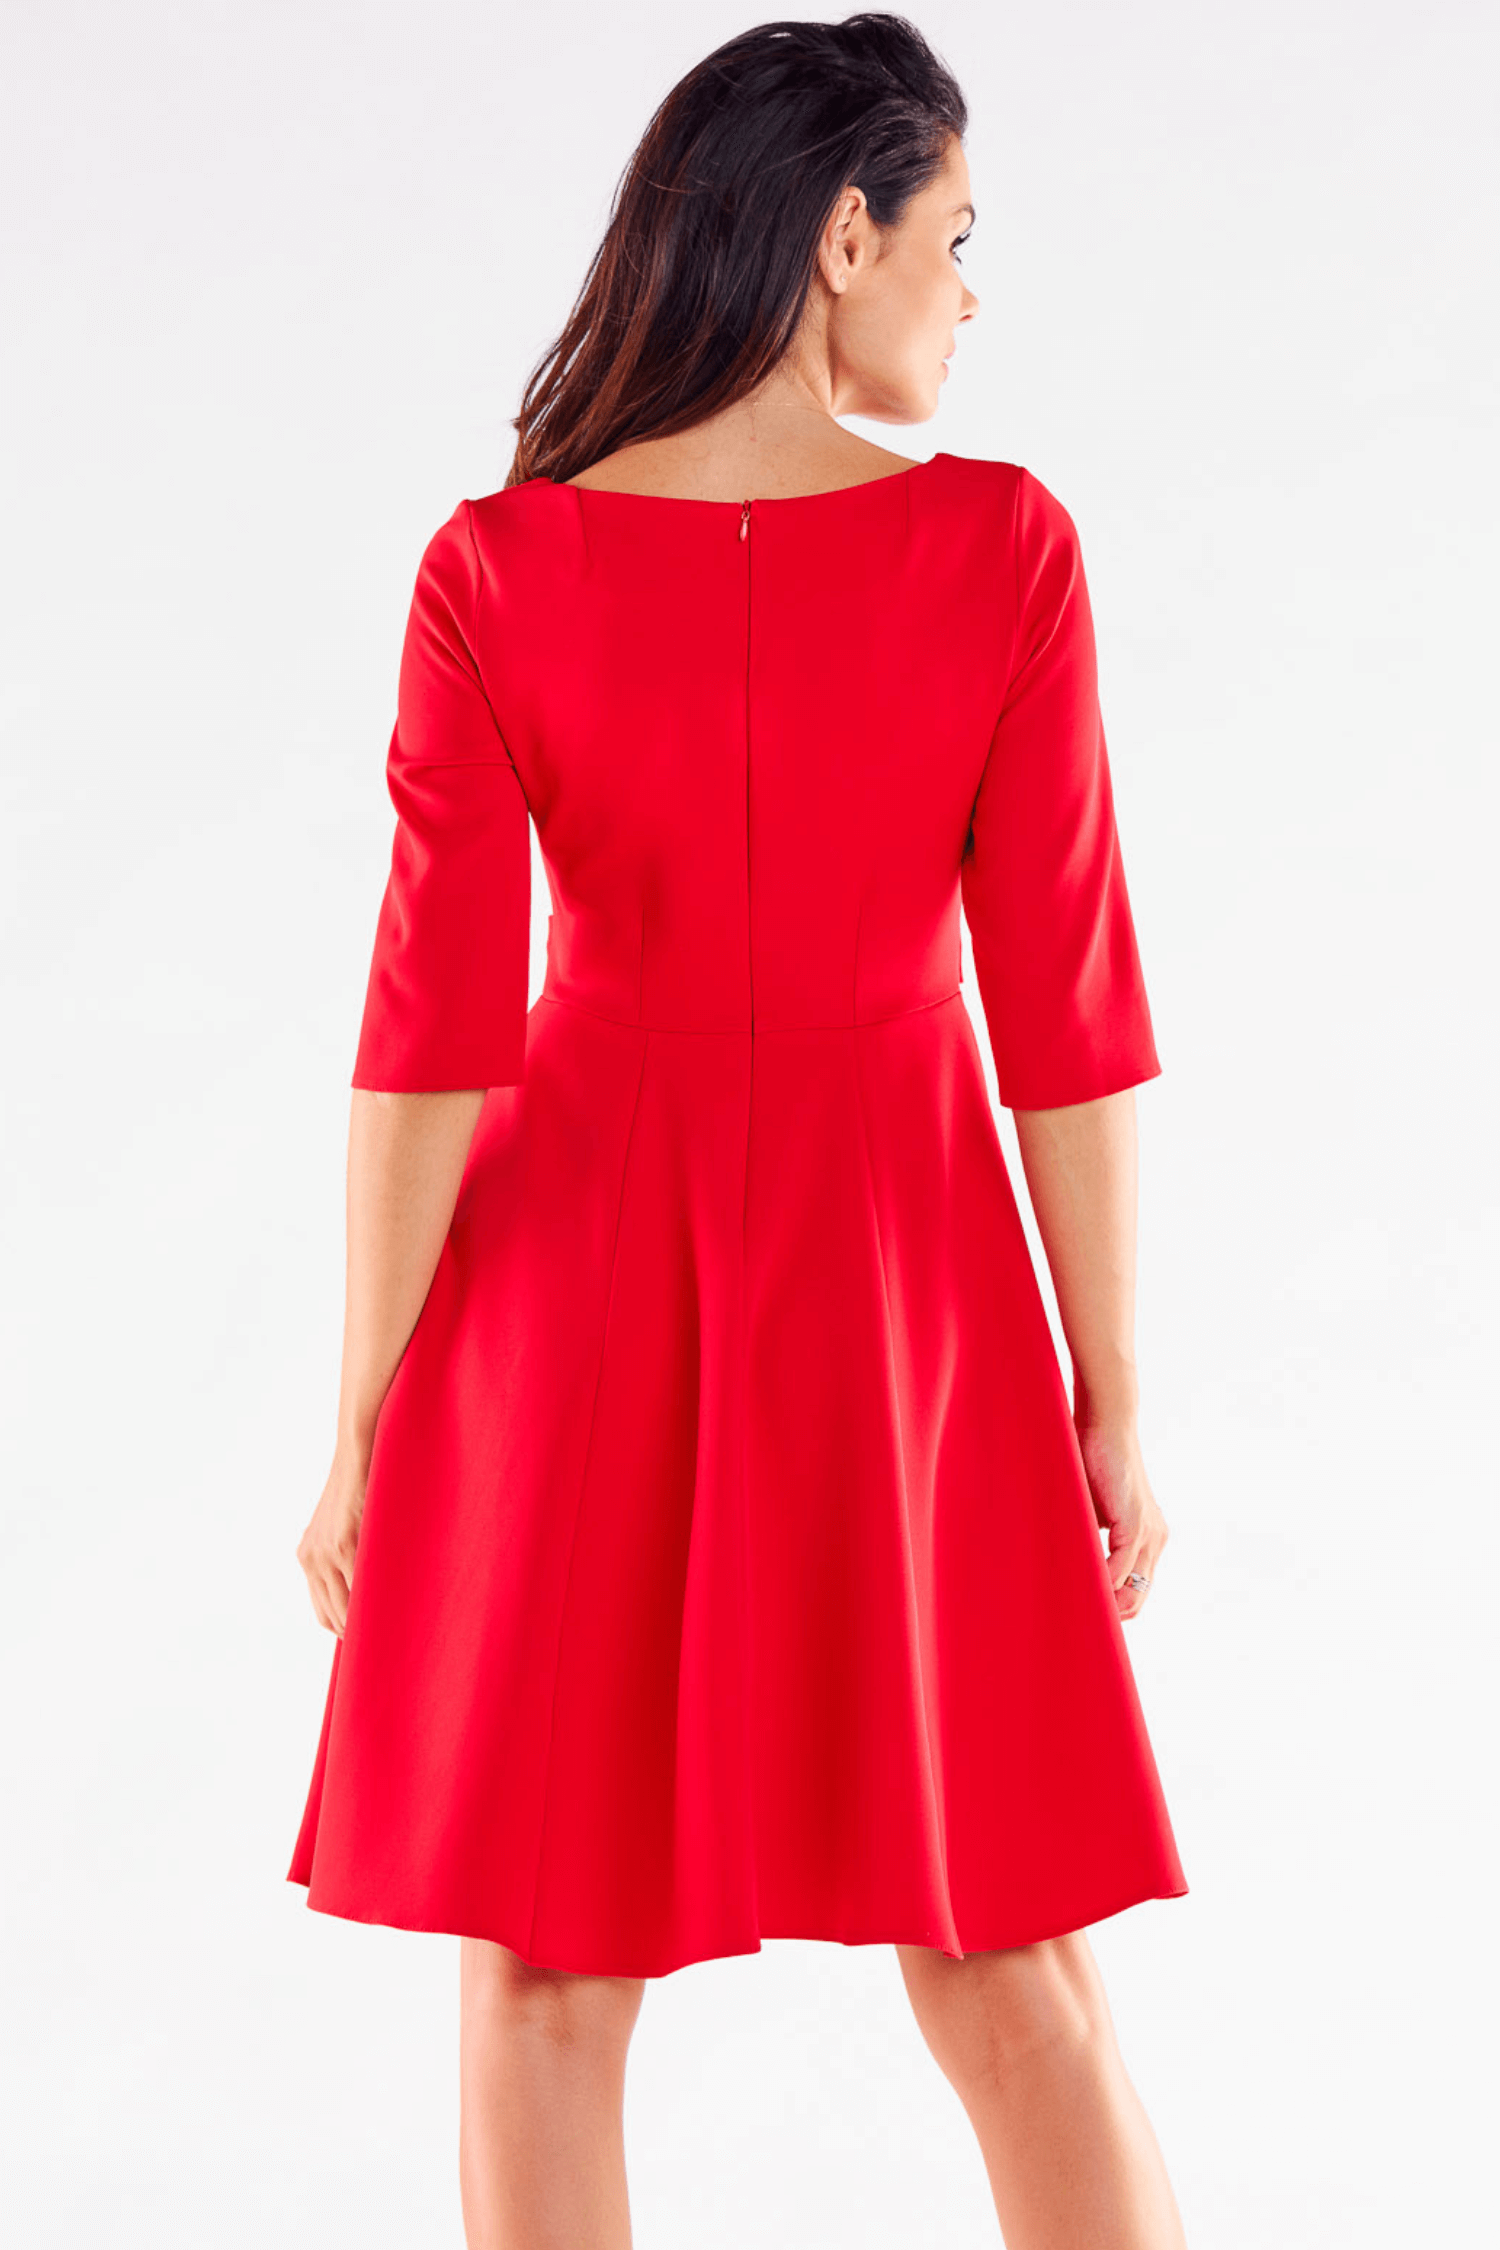 Opis: Elegancka sukienka rozkloszowana z ozdobnymi guzikami czerwona.